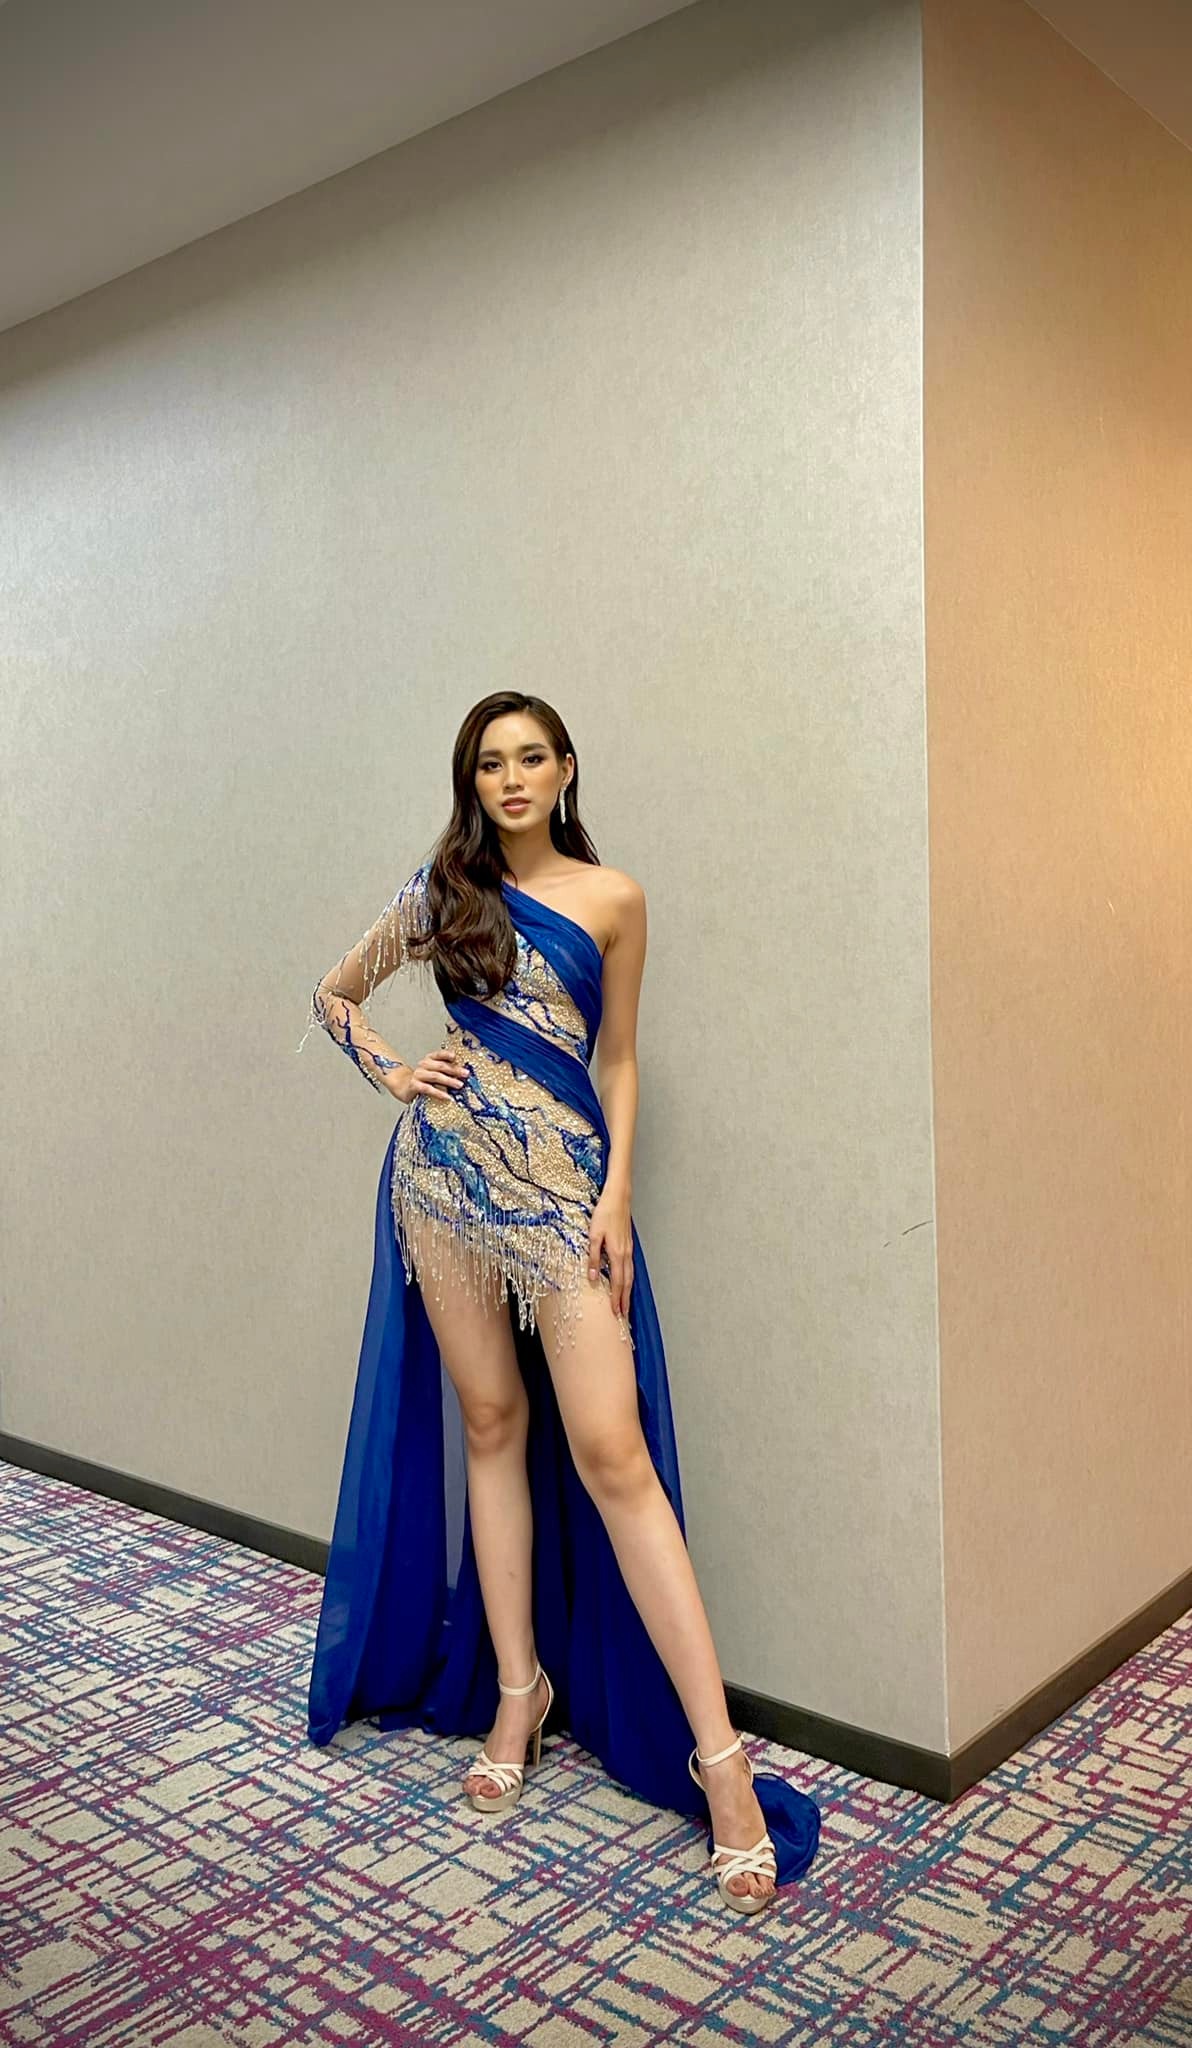 Đỗ Thị Hà là người đẹp châu Á duy nhất lọt Top 13 phần thi Top Model tại Miss World 2021